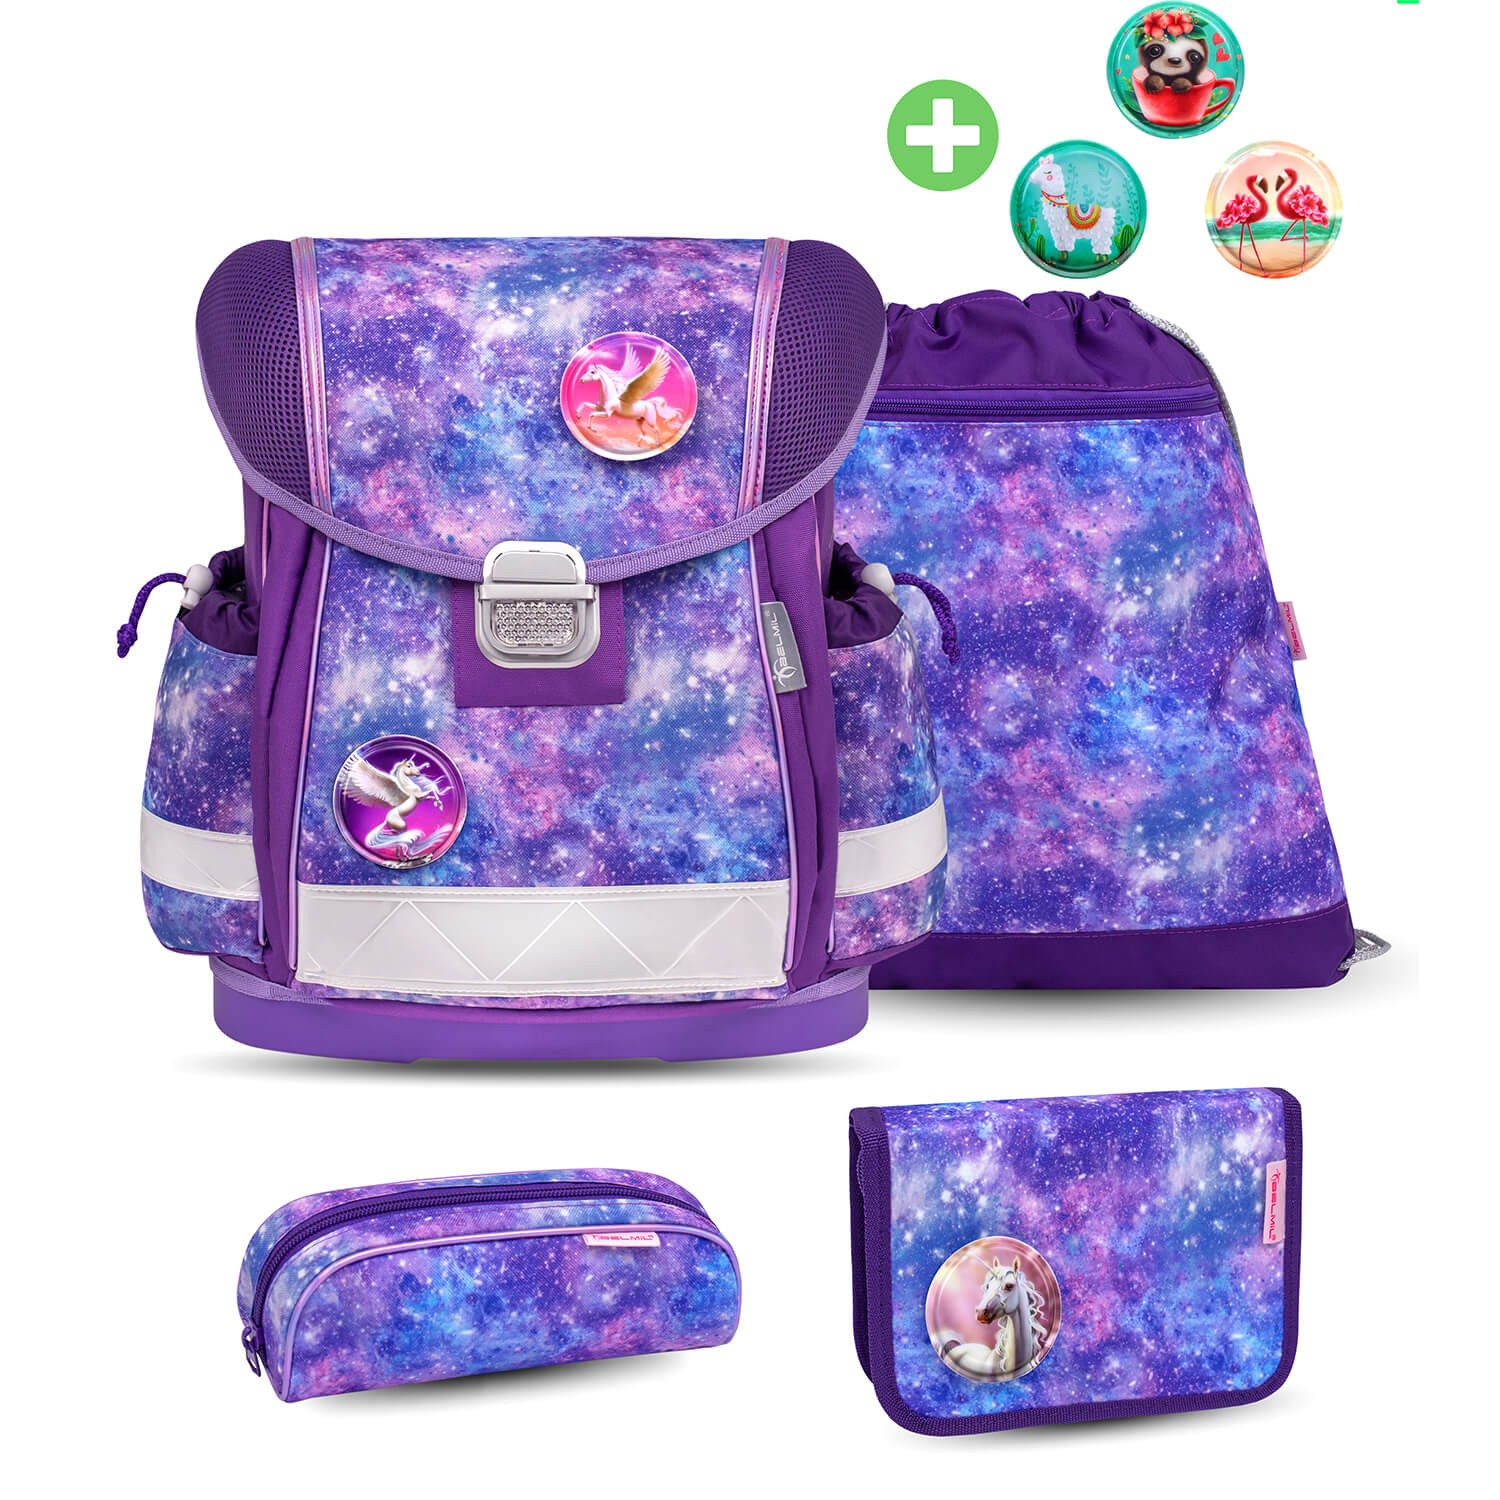 Classy Violet Universe schoolbag set 6 pcs with GRATIS Patch set